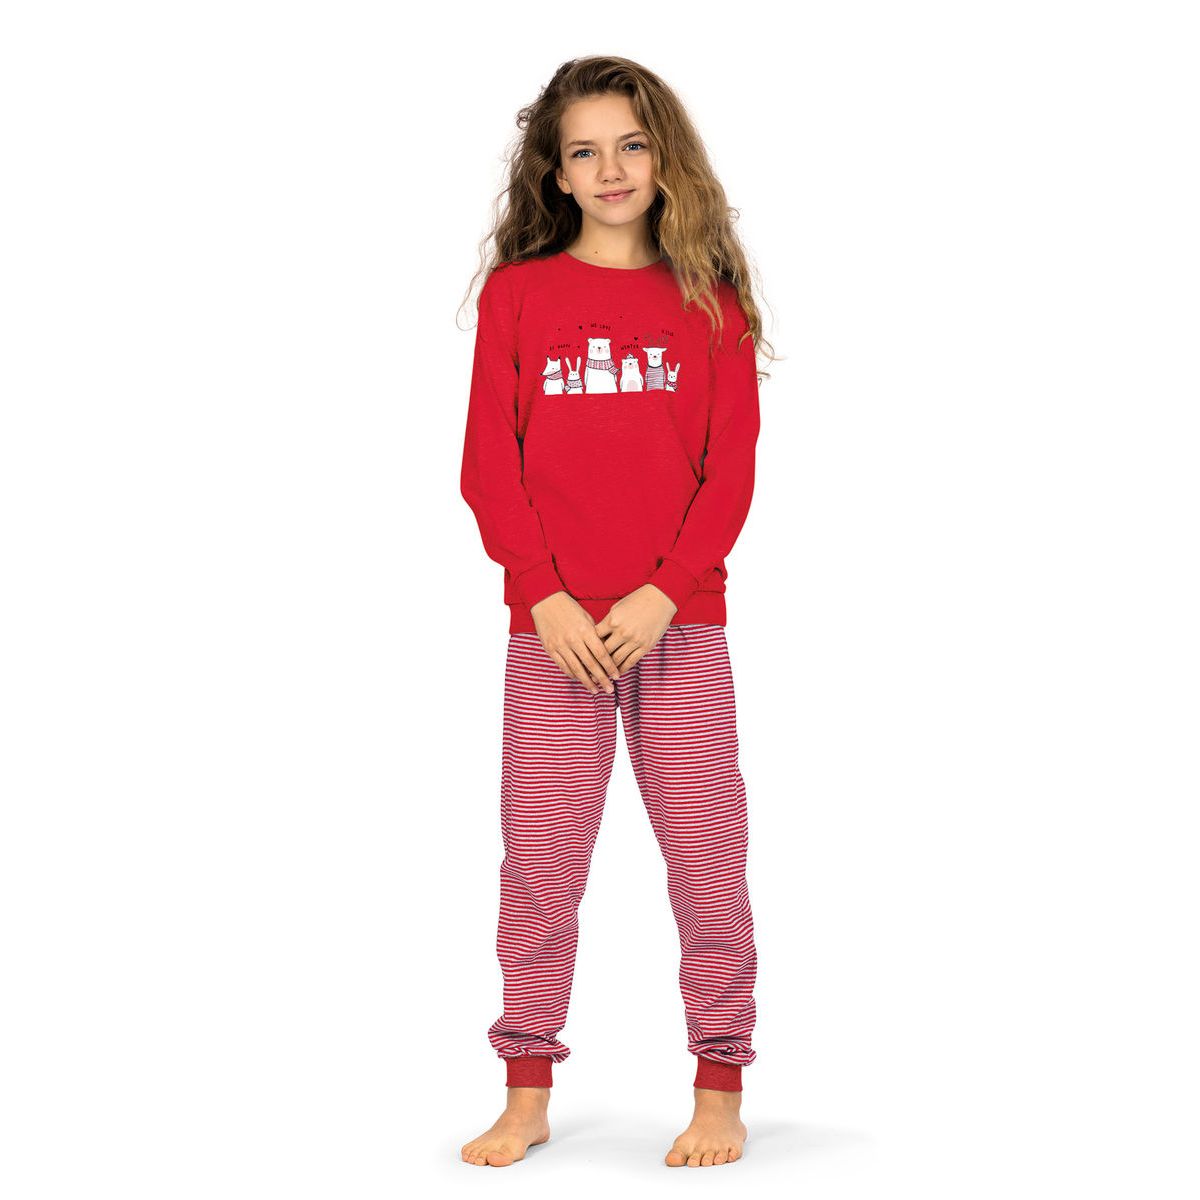 niettemin Ontmoedigen Pest Meisjes pyjama rood | Gratis verzending | Online de mooiste pyjama's,  nachthemden, ondermode en meer